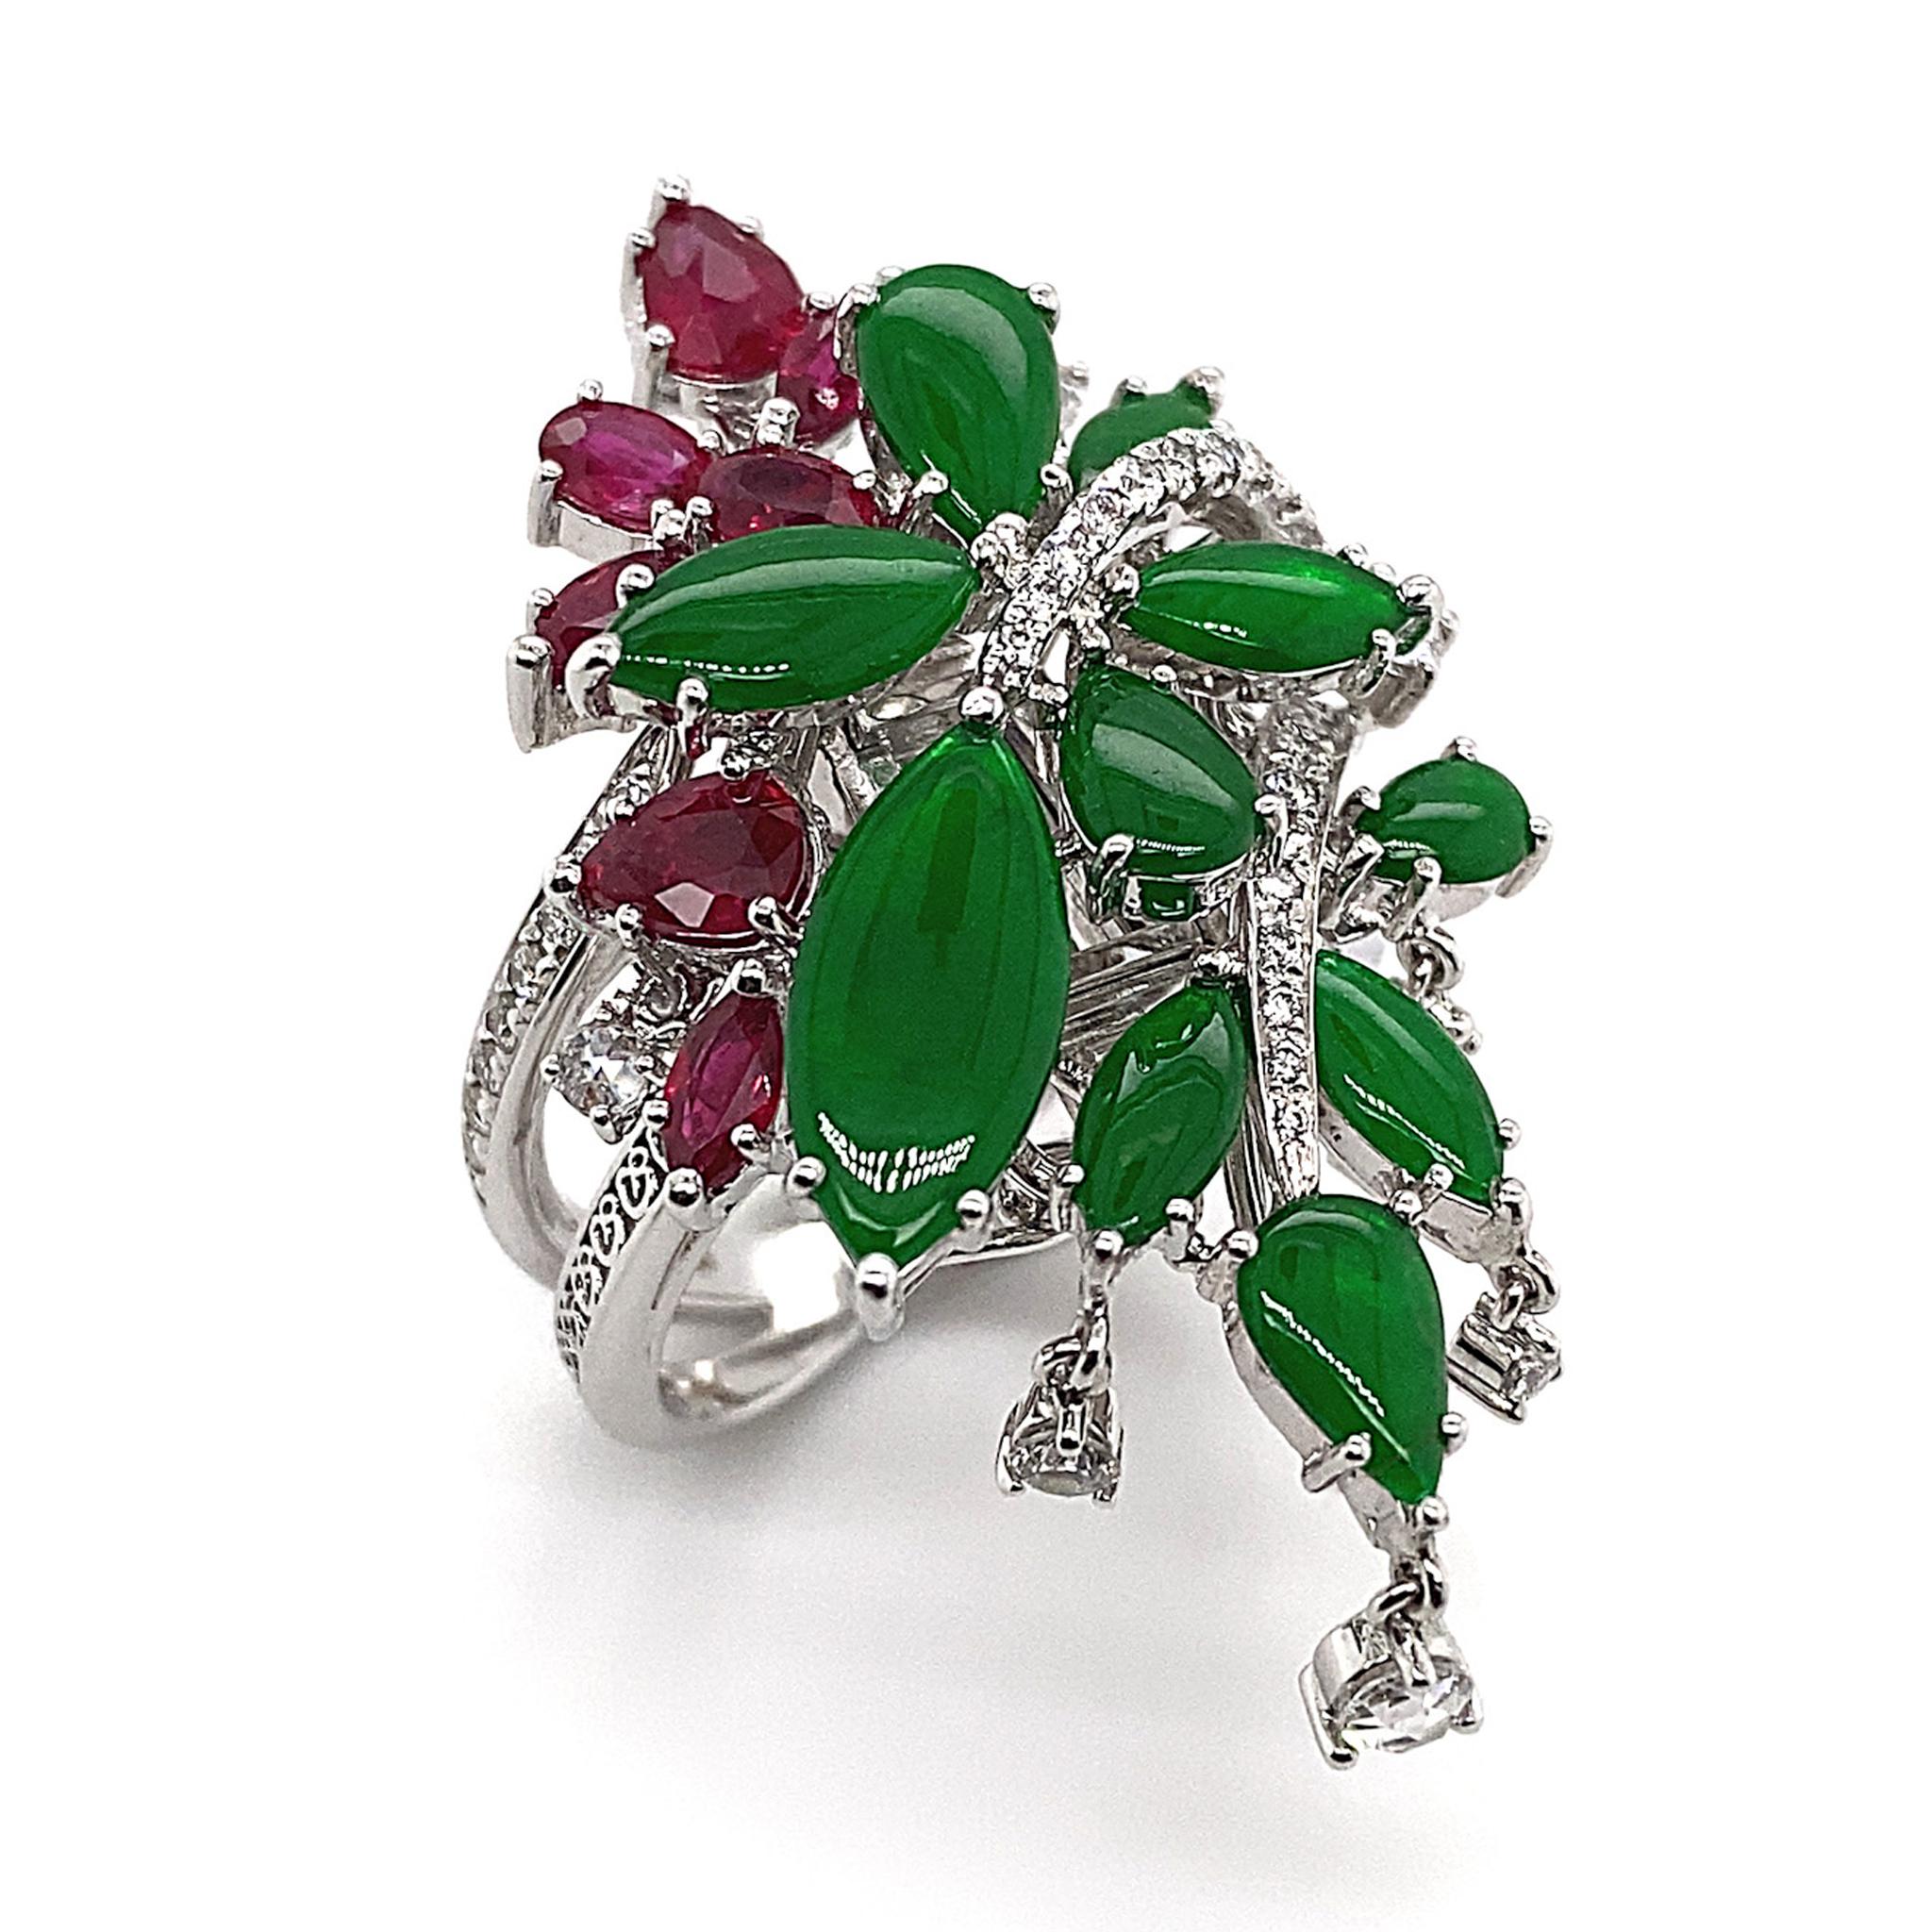 The House of Diamonds' präsentiert einen beeindruckenden, von Blumen inspirierten Ring, der mit hochwertigem 'Imperial Green'-Jadeit, Rubinen und Diamanten in Collectional-Qualität besetzt ist. Ein weiteres wunderschönes Stück aus Dilys'